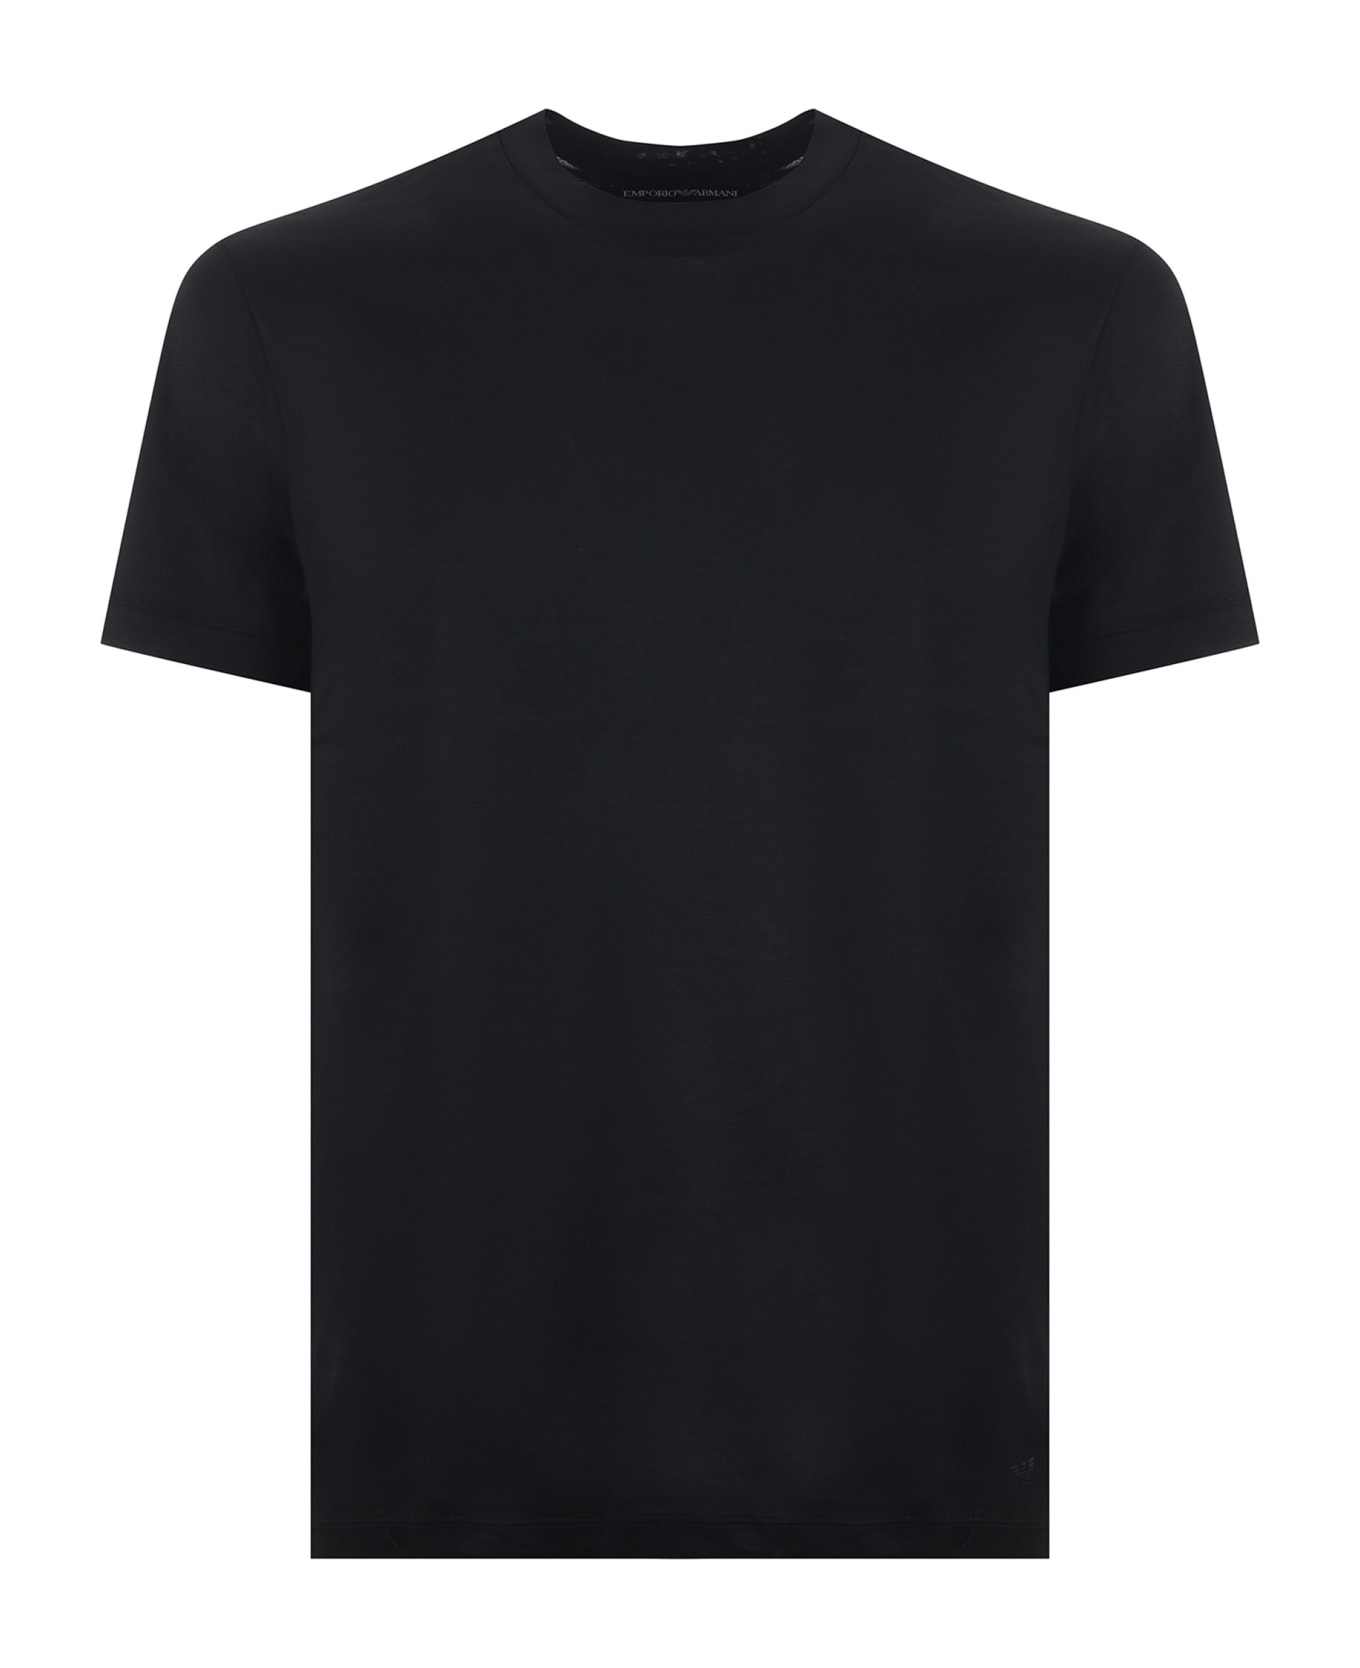 Emporio Armani T-shirt - Nero シャツ